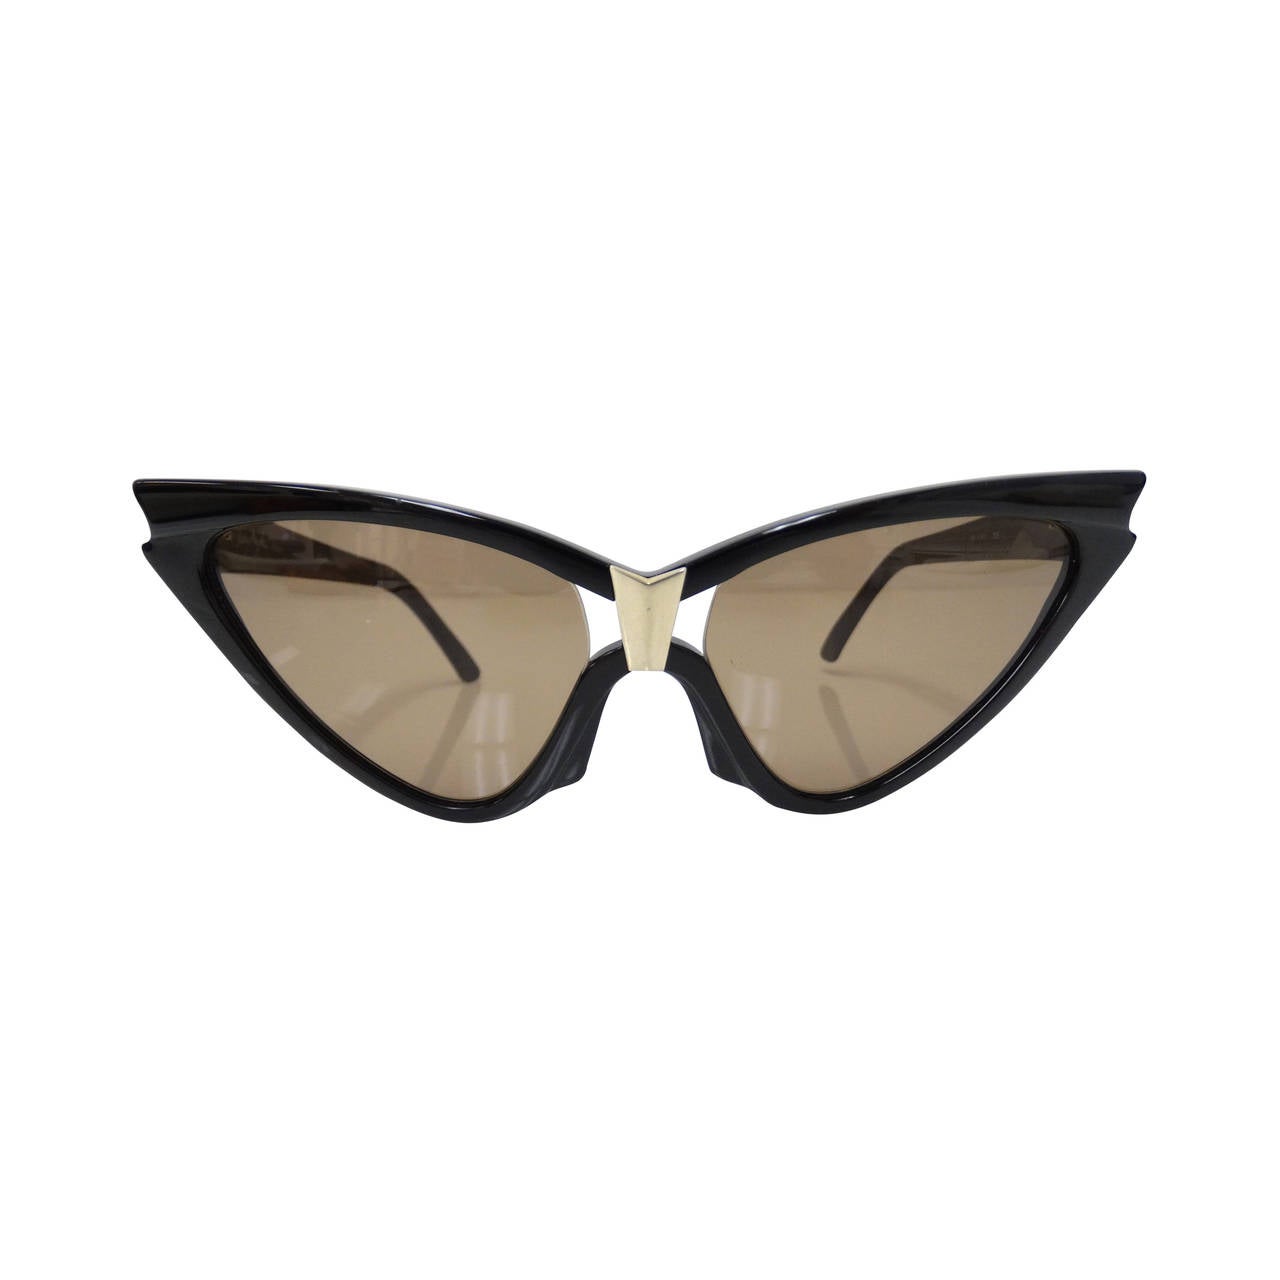 1980s Thierry Mugler "Cat Eye" Sunglasses